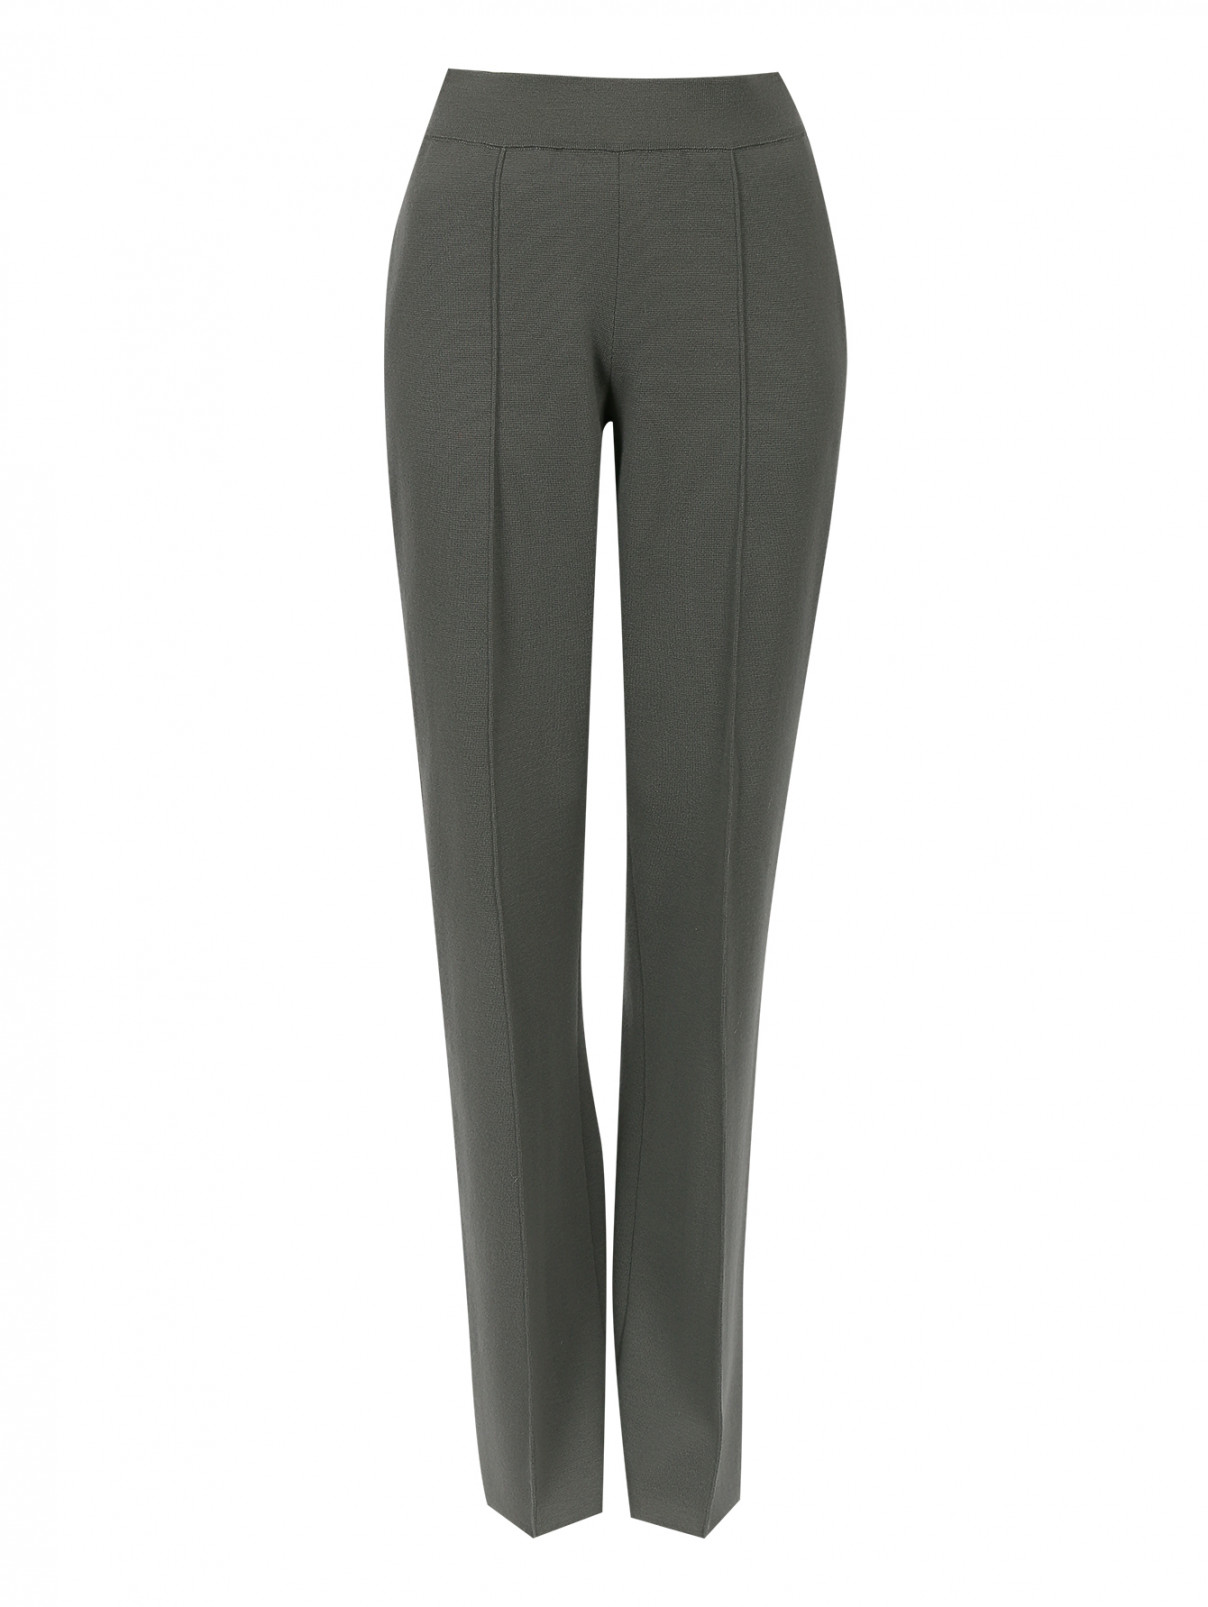 Шерстяные брюки на резинке Alberta Ferretti  –  Общий вид  – Цвет:  Серый